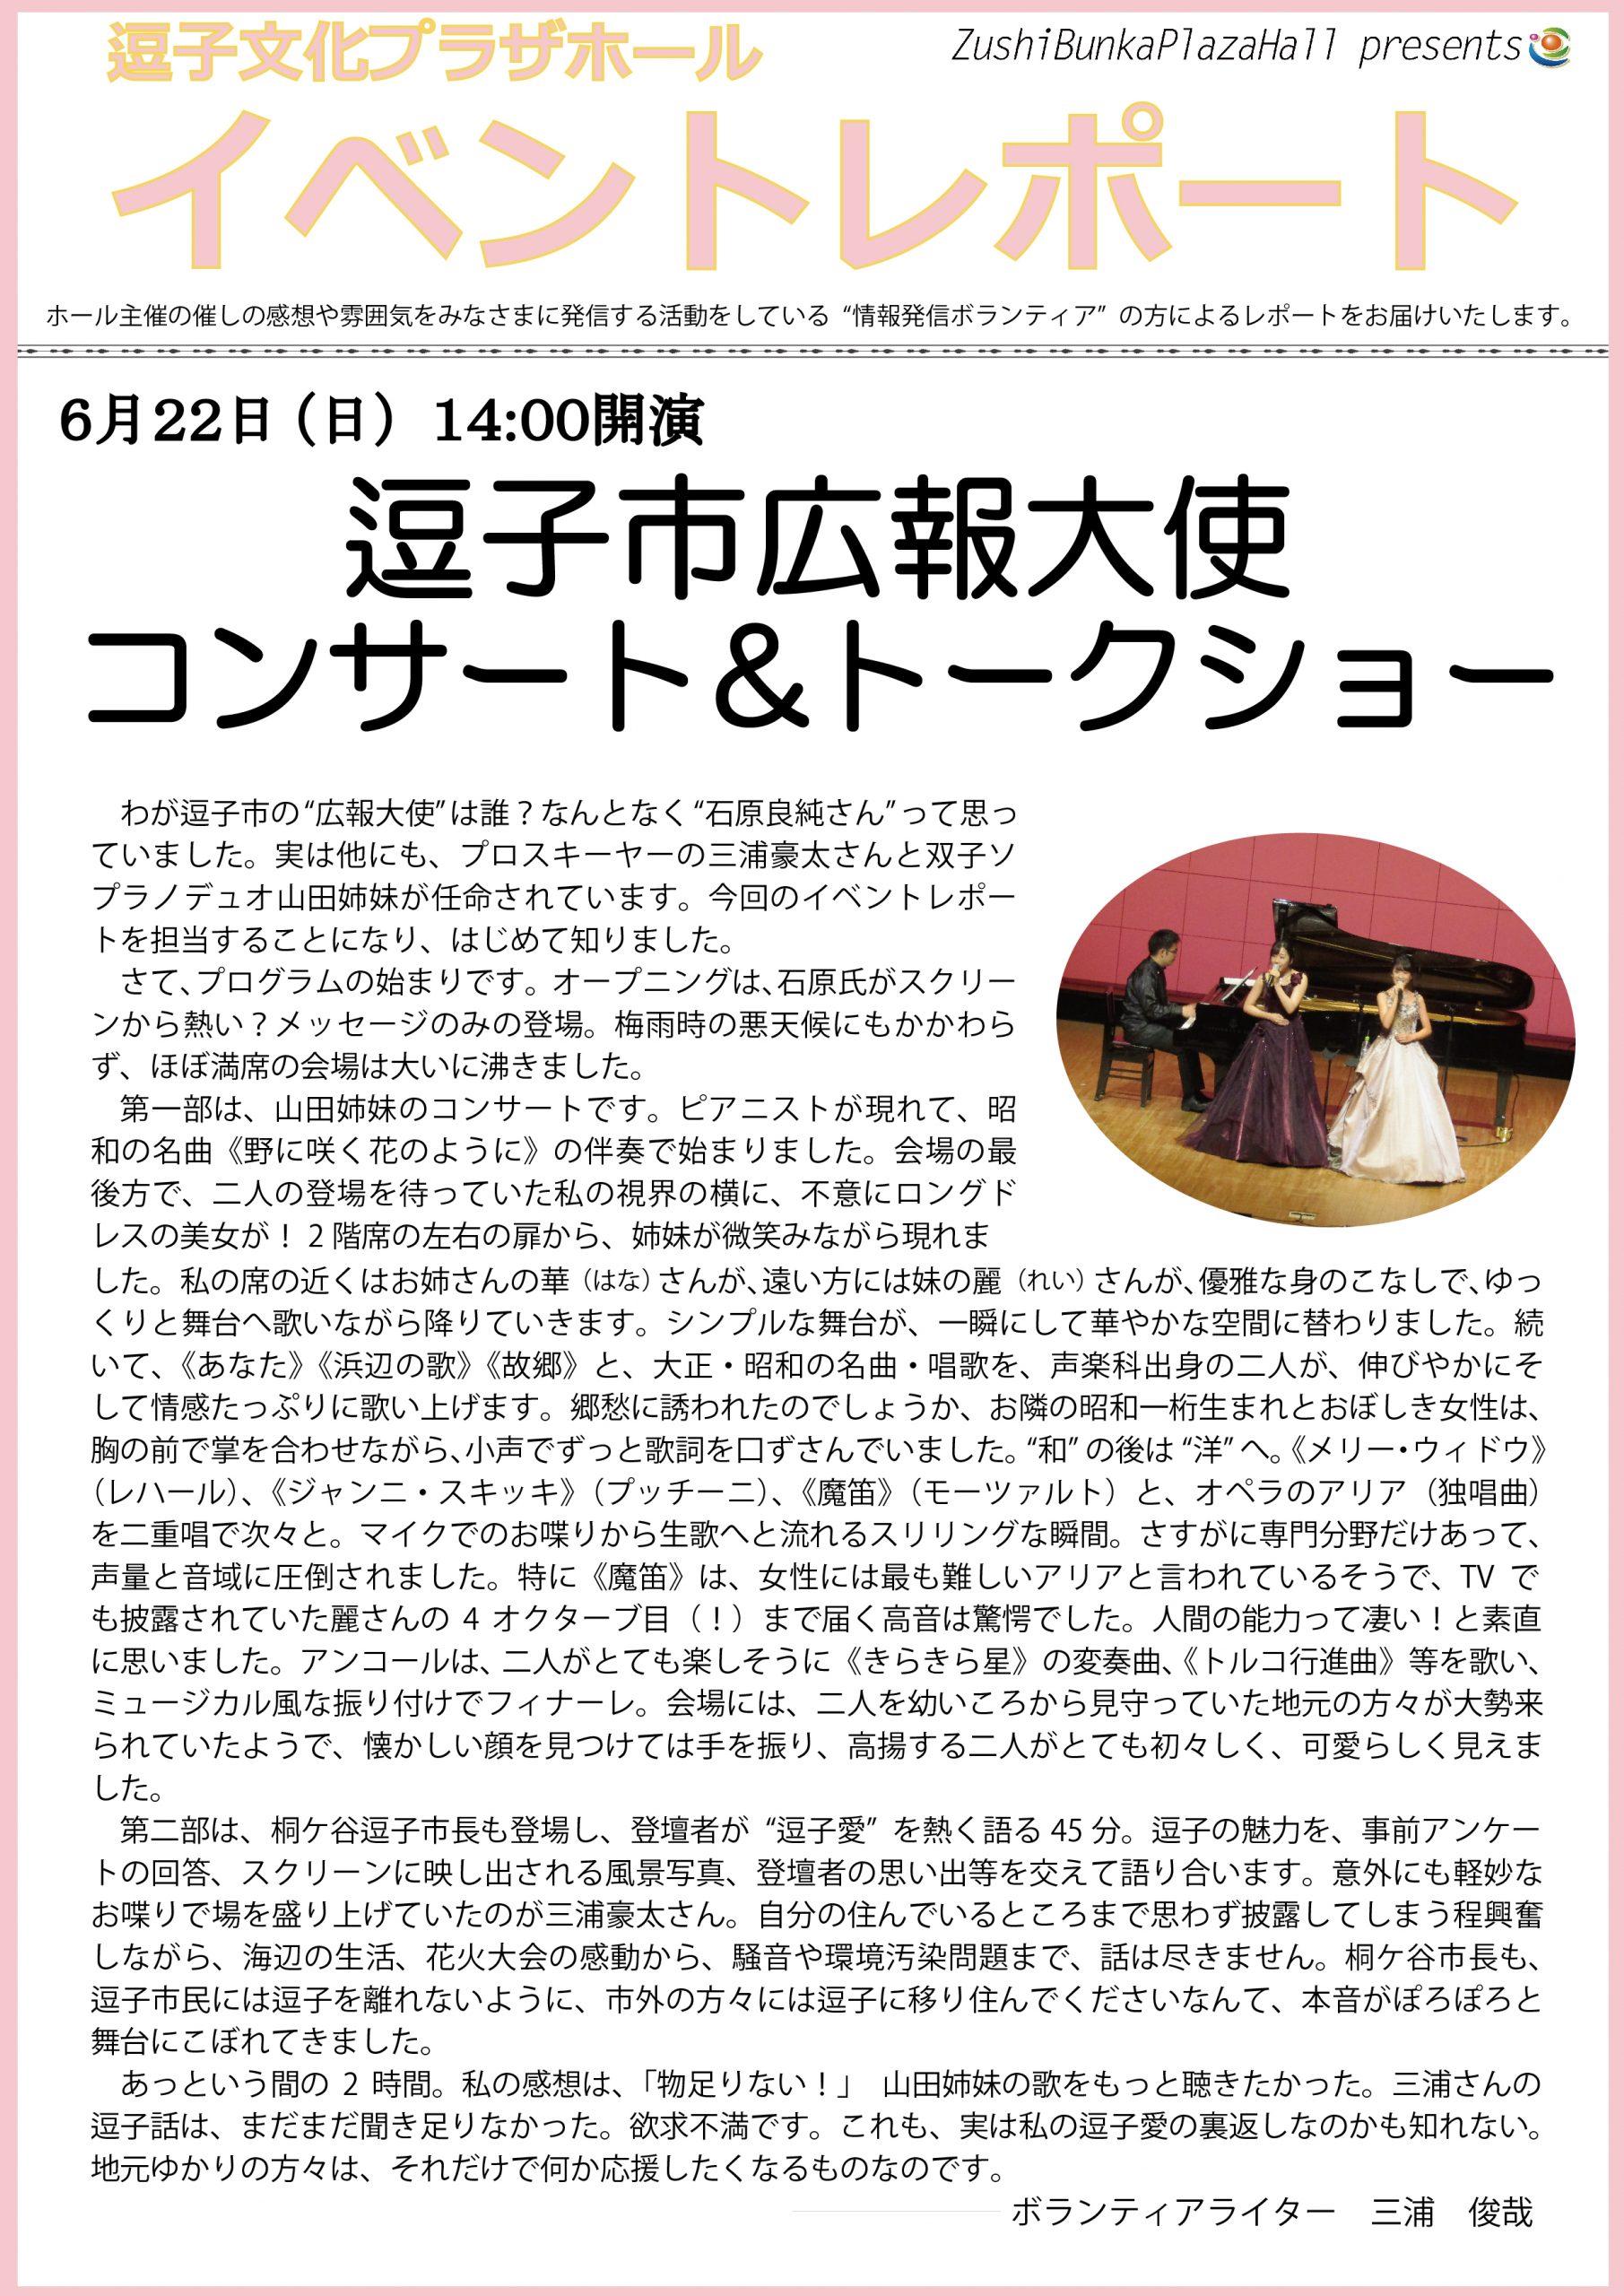 イベントレポート「逗子市広報大使 コンサート&トークショー」2019年6月22日（日）開催